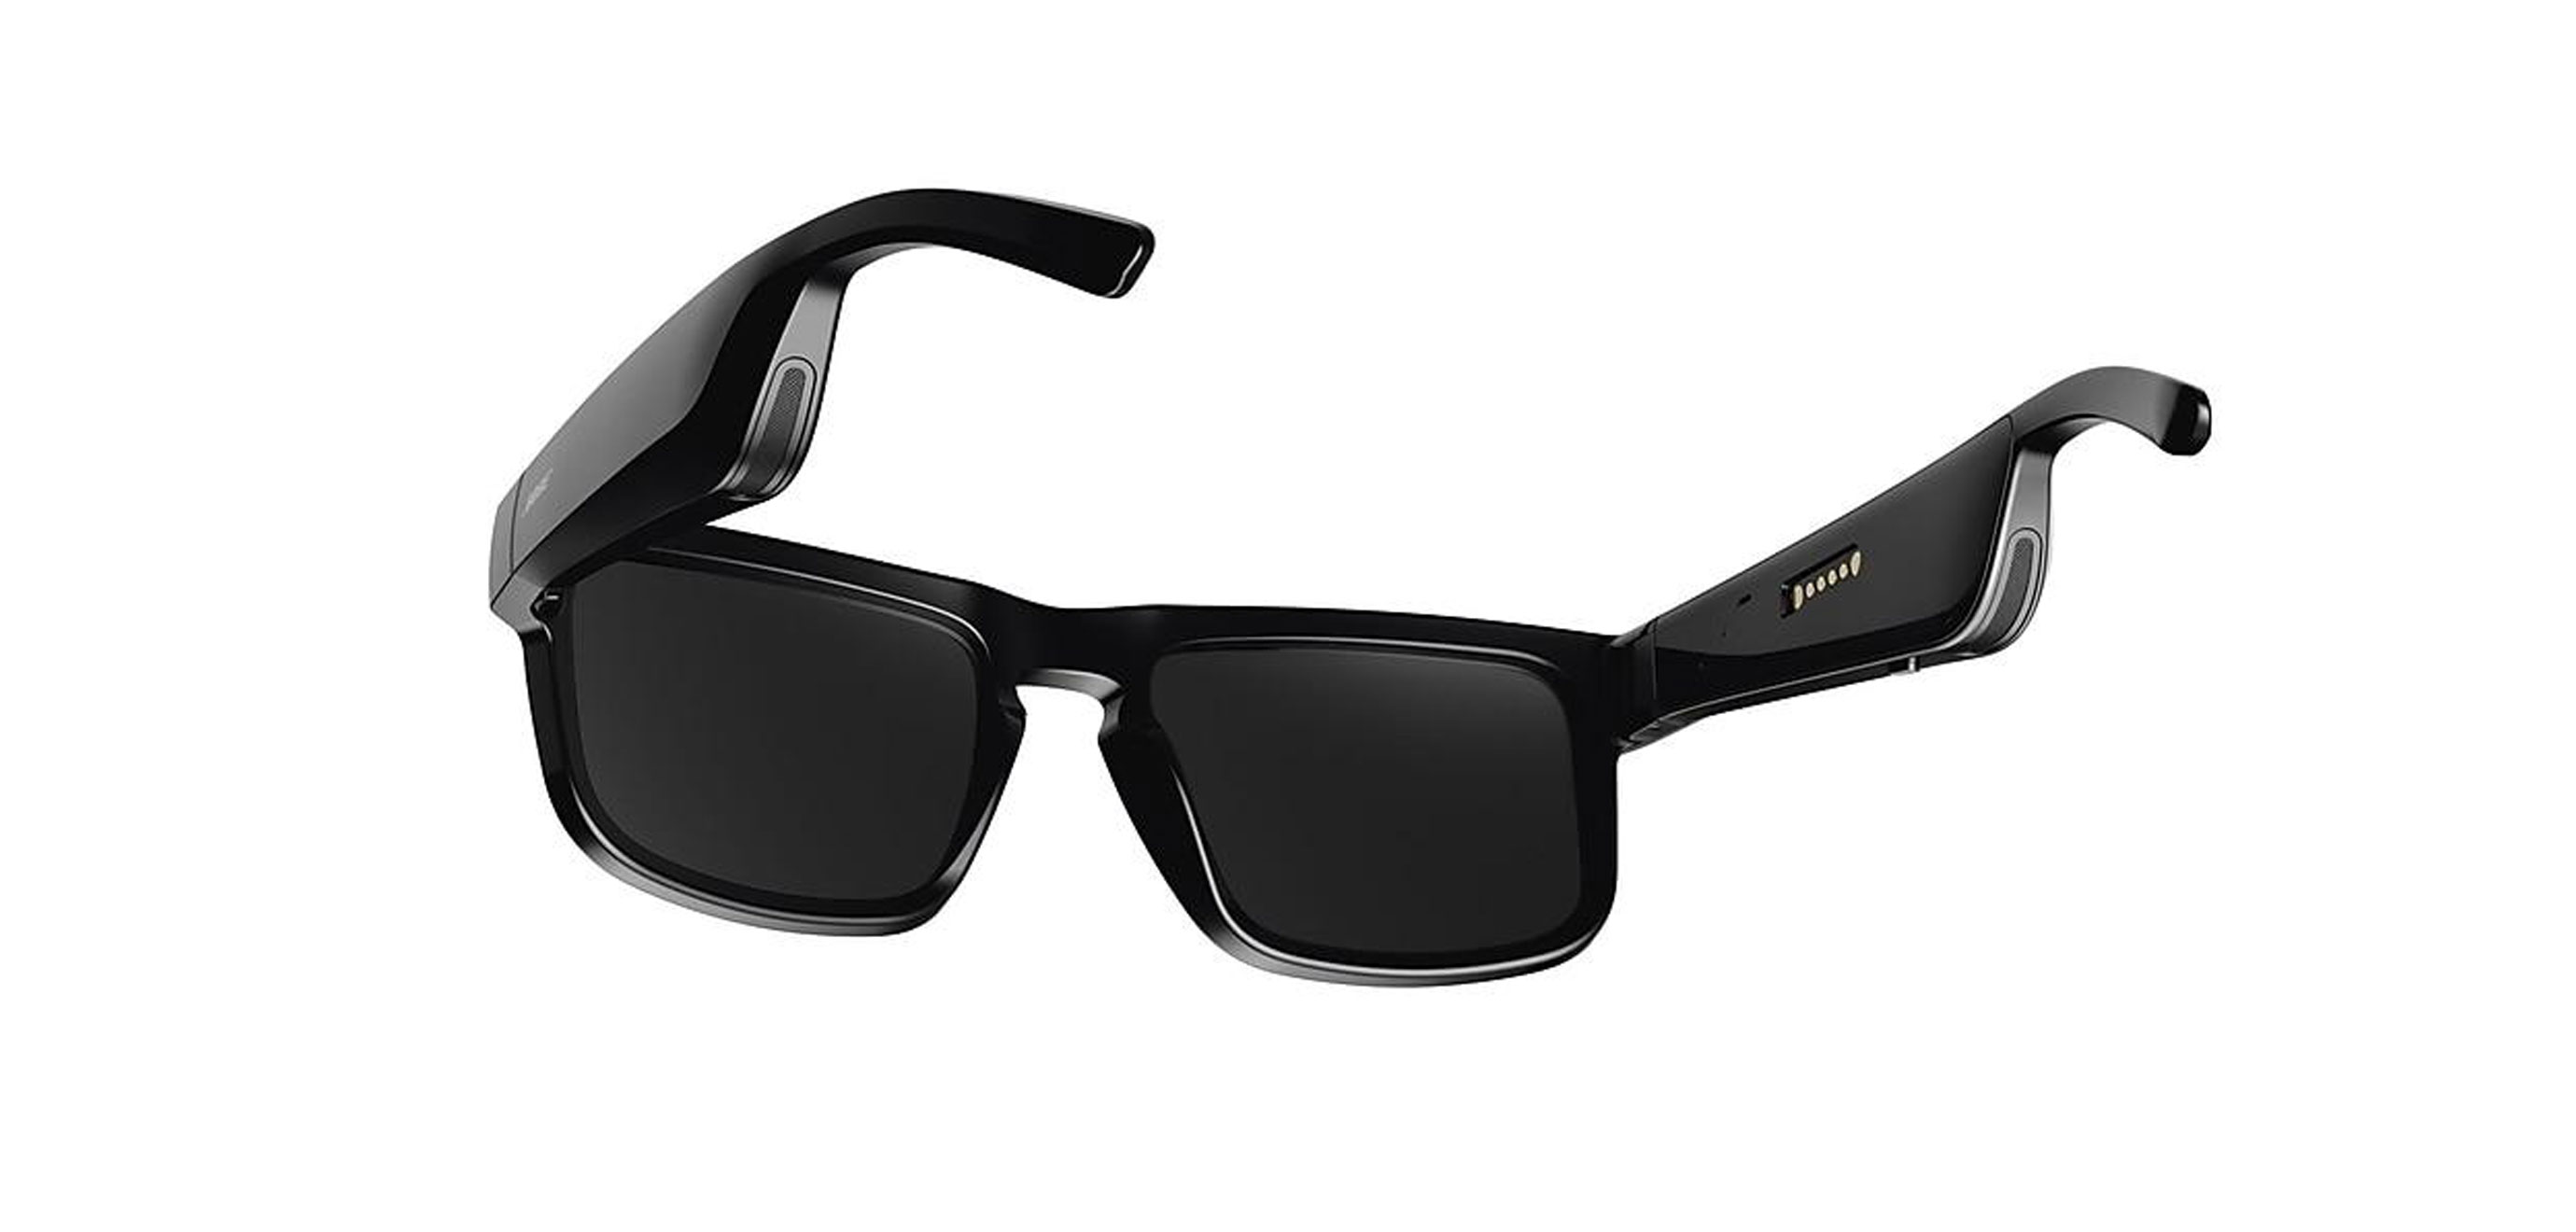 Arrivano in Italia i Bose Frames, occhiali da sole con realtà aumentata  acustica